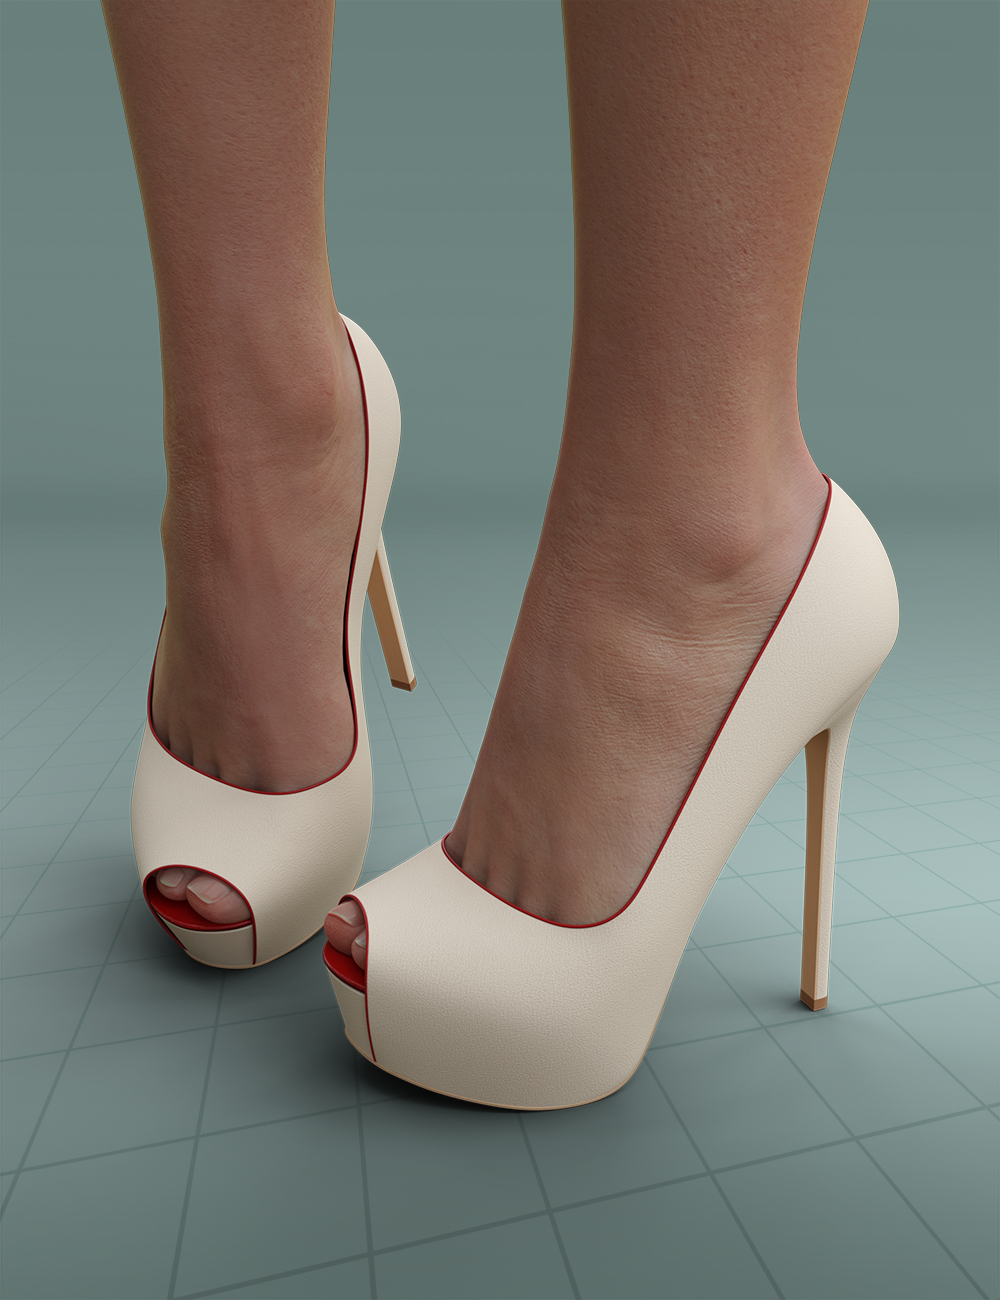 Peeptoe Pumps Vaya for Genesis 3 and 8 Females by: PrefoX, 3D Models by Daz 3D